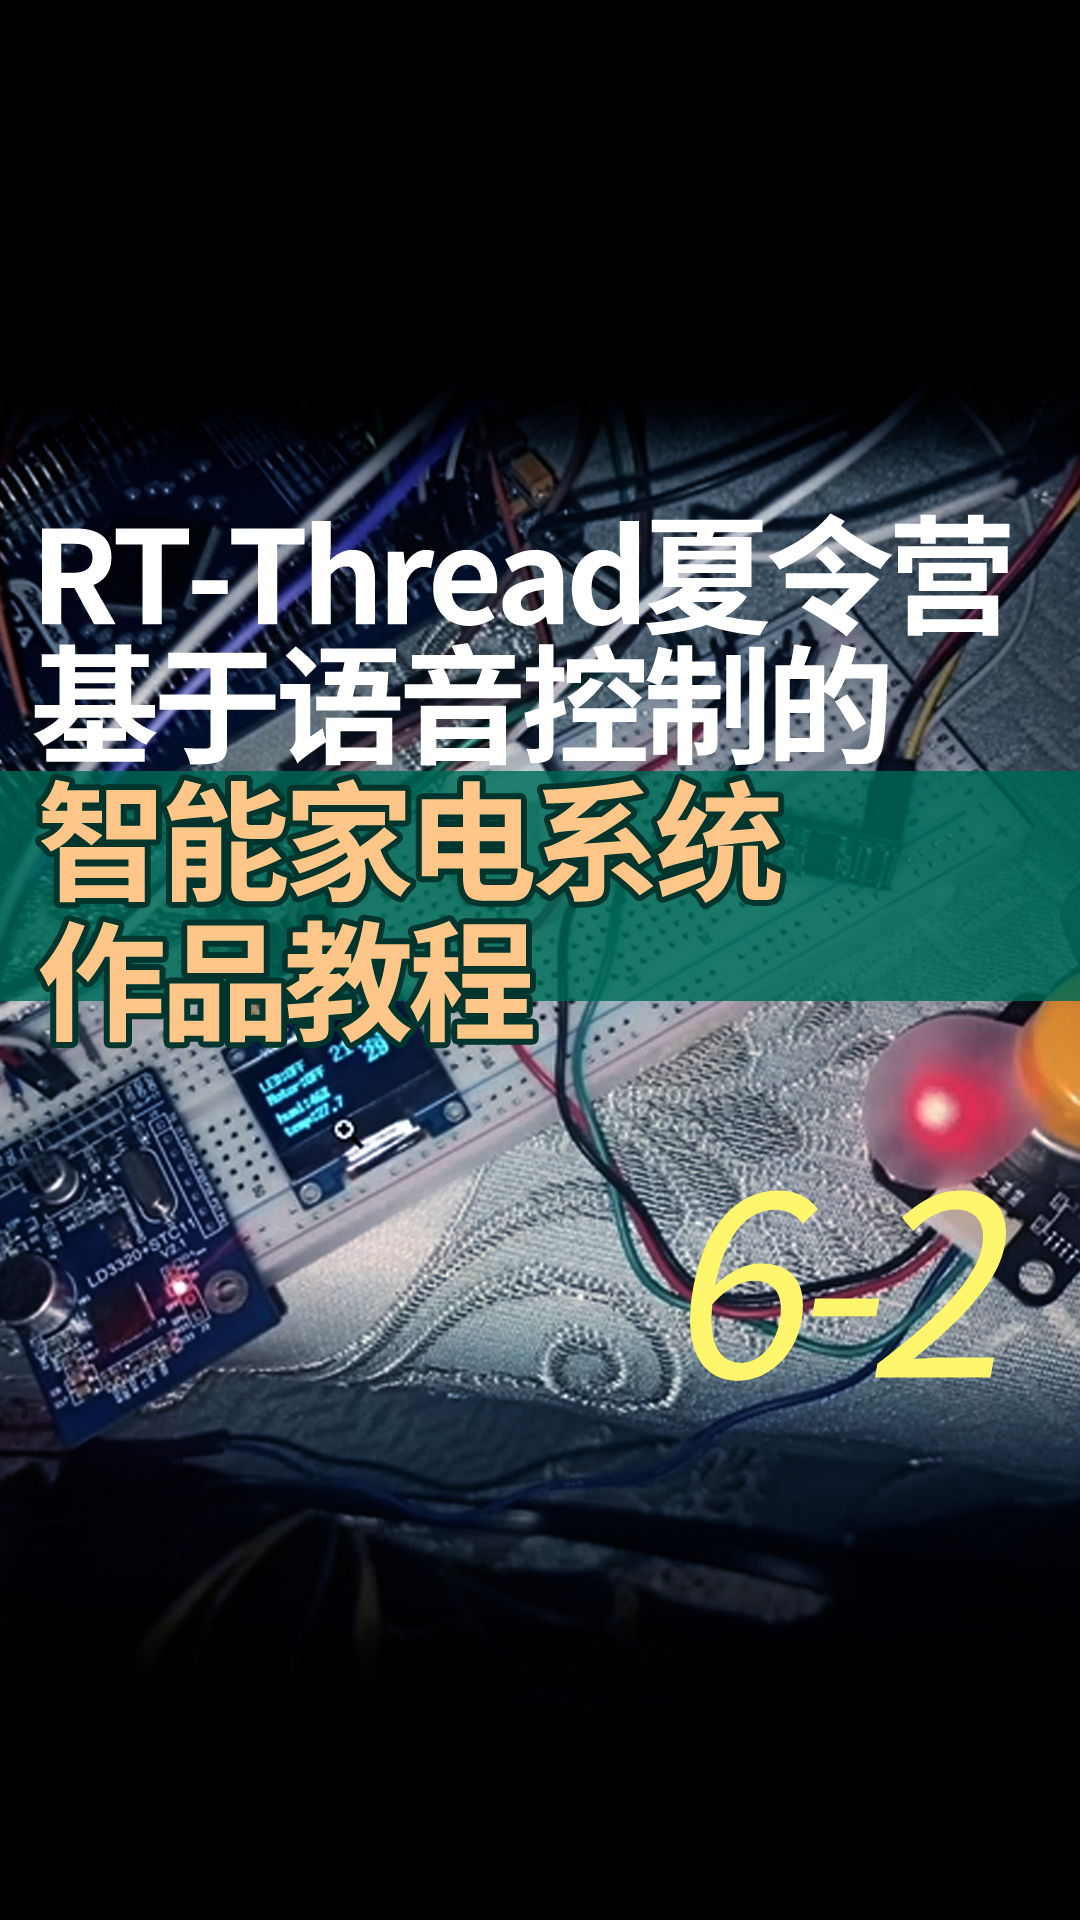 RT-Thread夏令营基于语音控制的智能家电系统作品教程 6-2程序完善